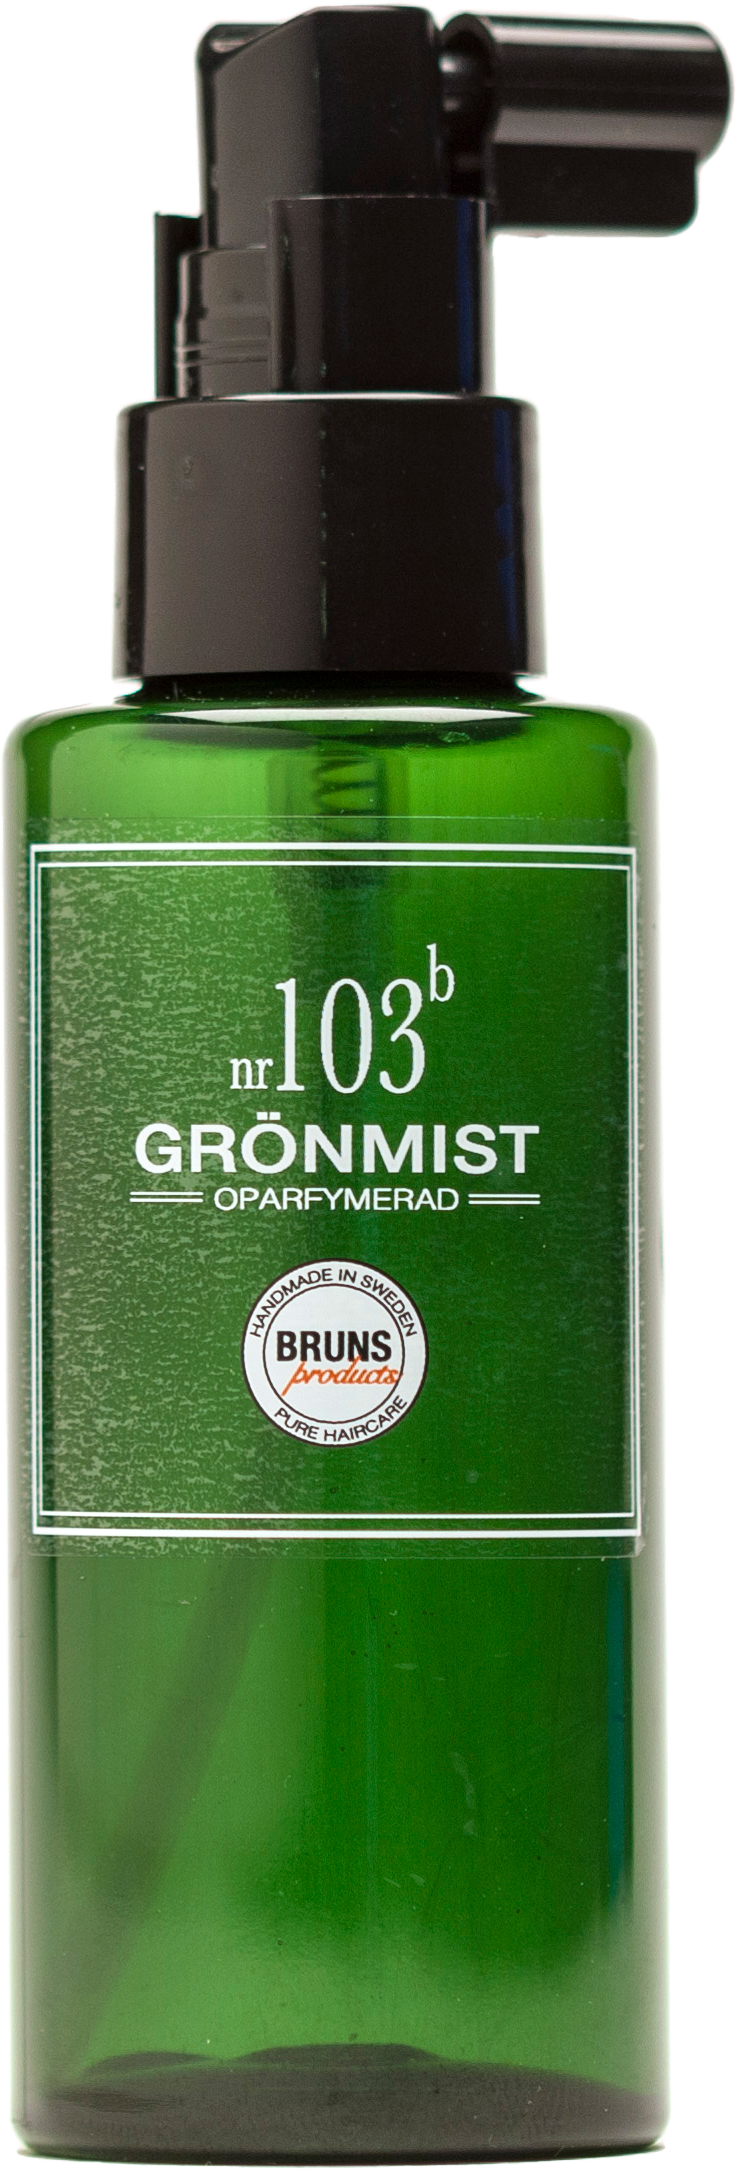 BRUNS Grönmist Nº103 100 ml